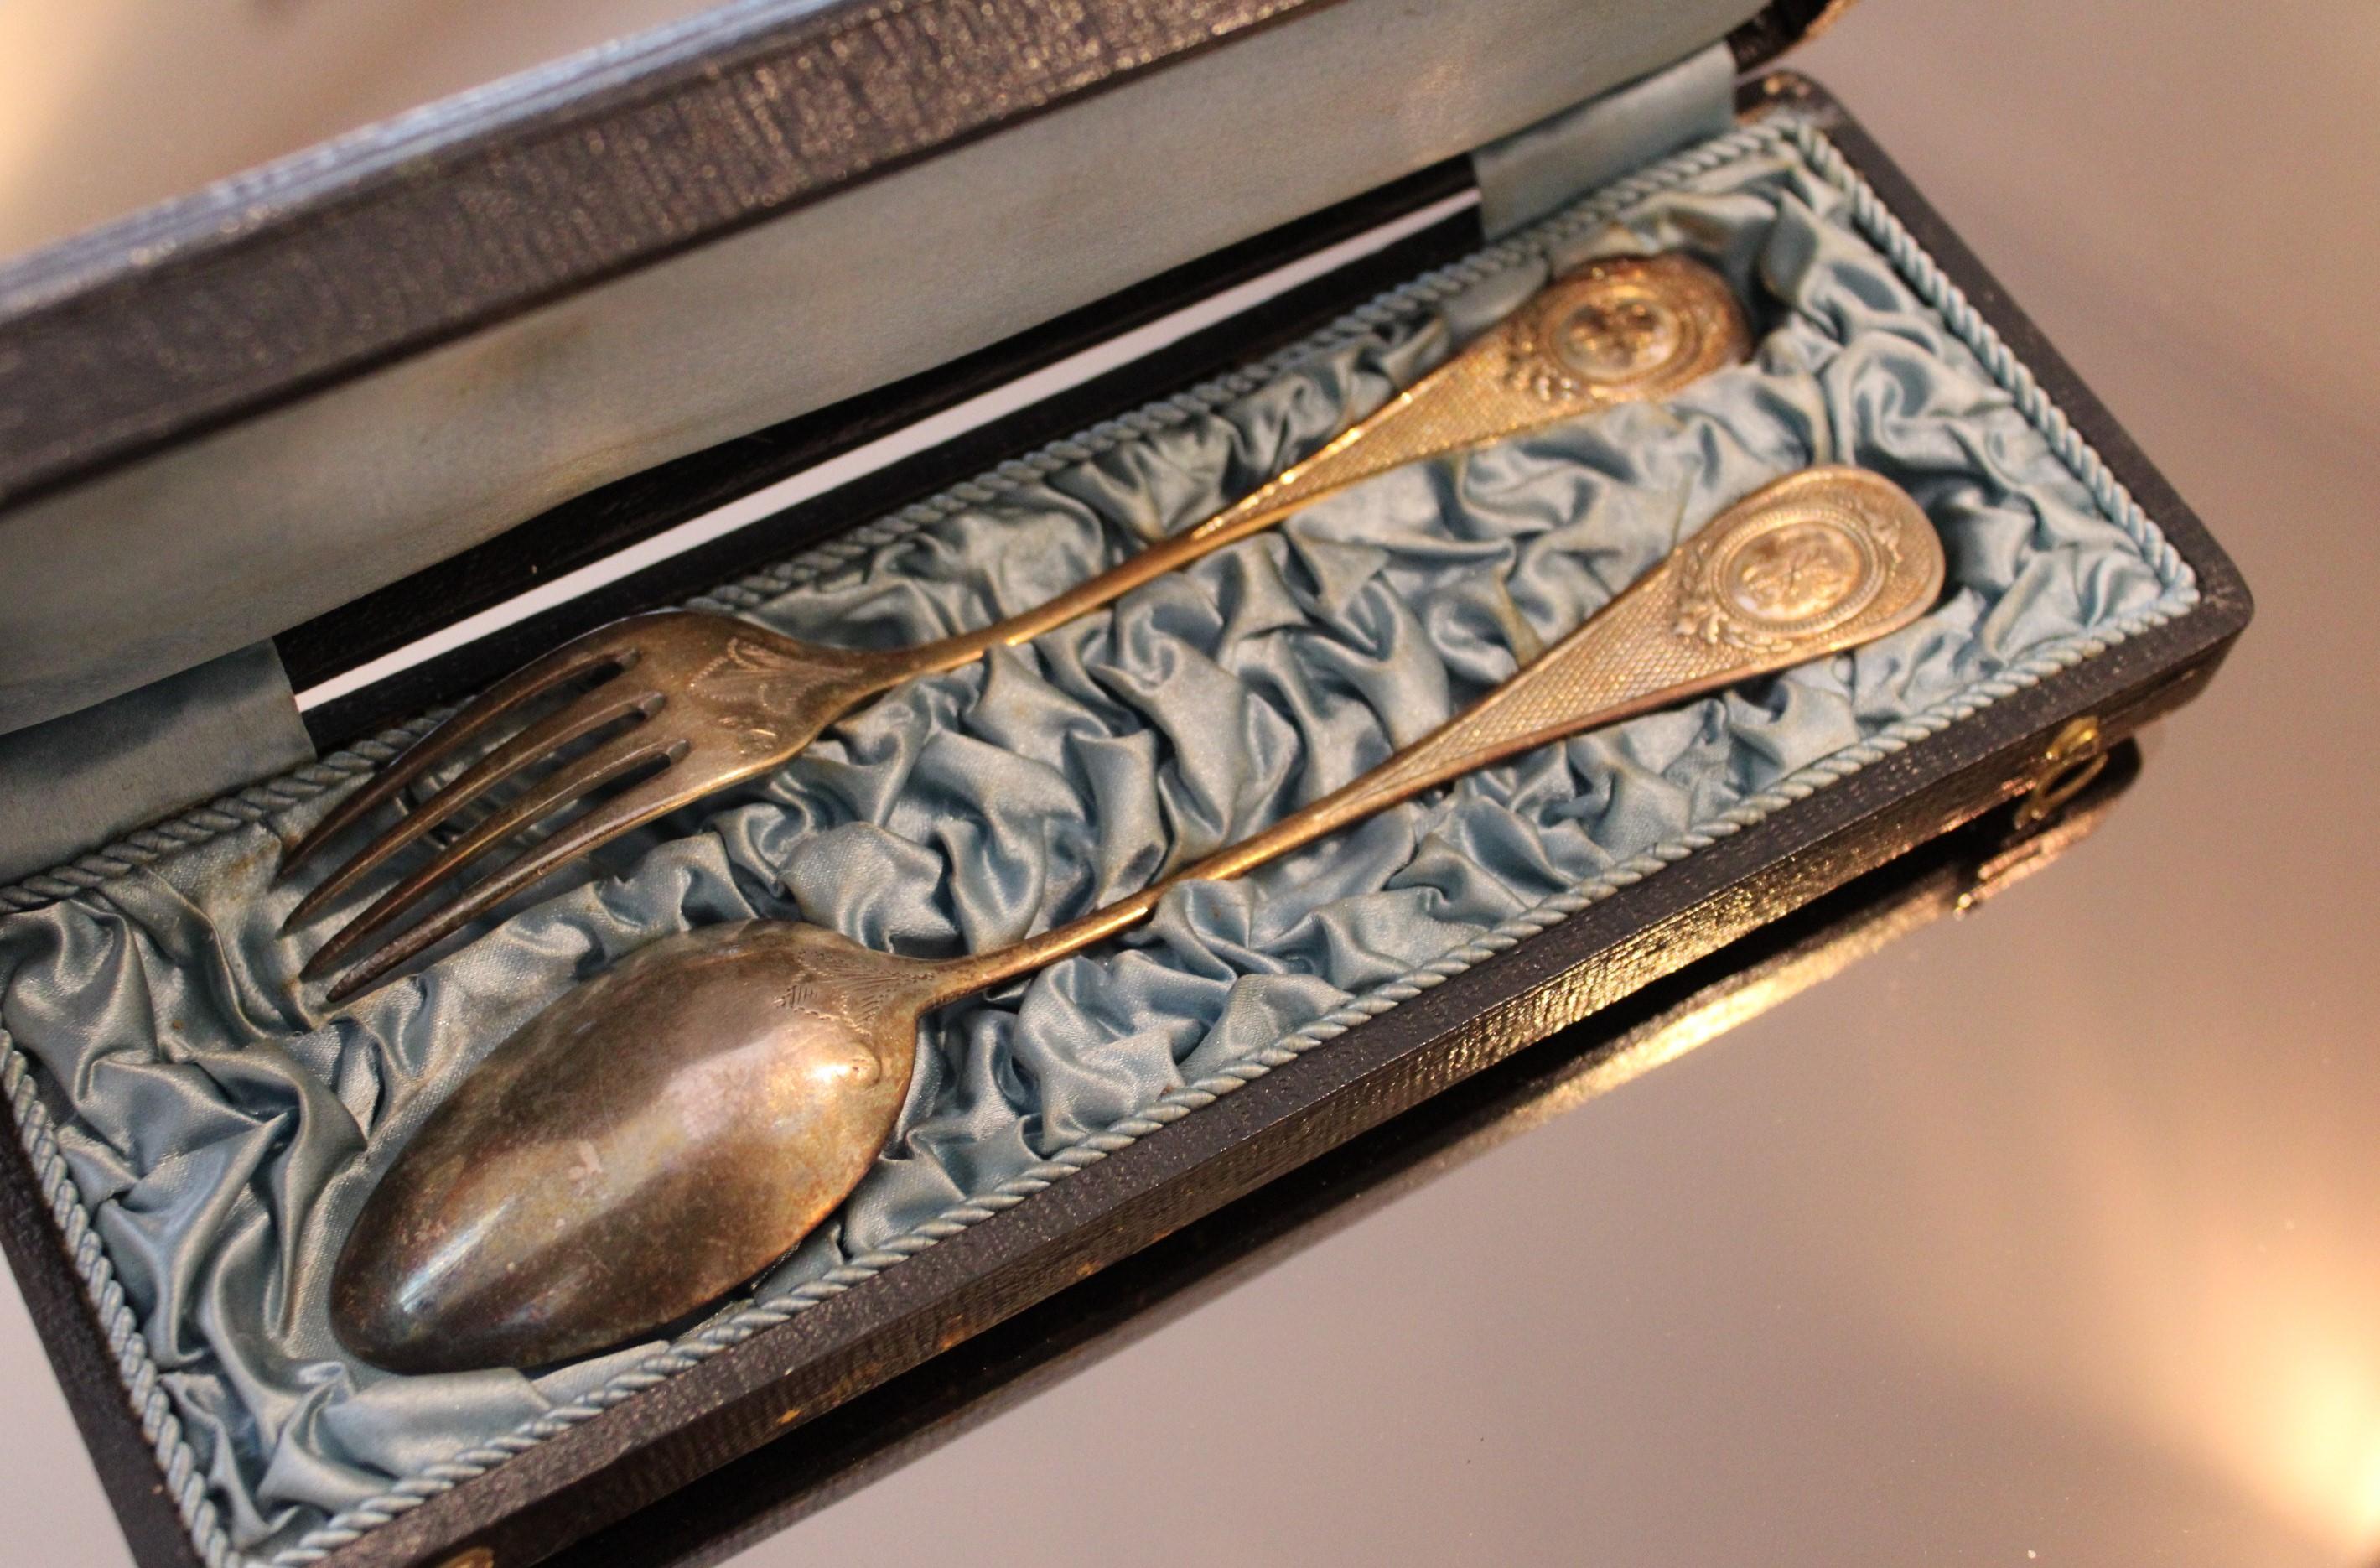 Solid silver dessert cutlery in a box
Hallmark Minerva
19th century 

Box dimensions : 23 x 9 x 3.5 cm
Spoon dimensions : 18 x 4 cm / Weight : 31 g
Fork dimensions : 17 x 2.5 cm / Weight : 36 g

